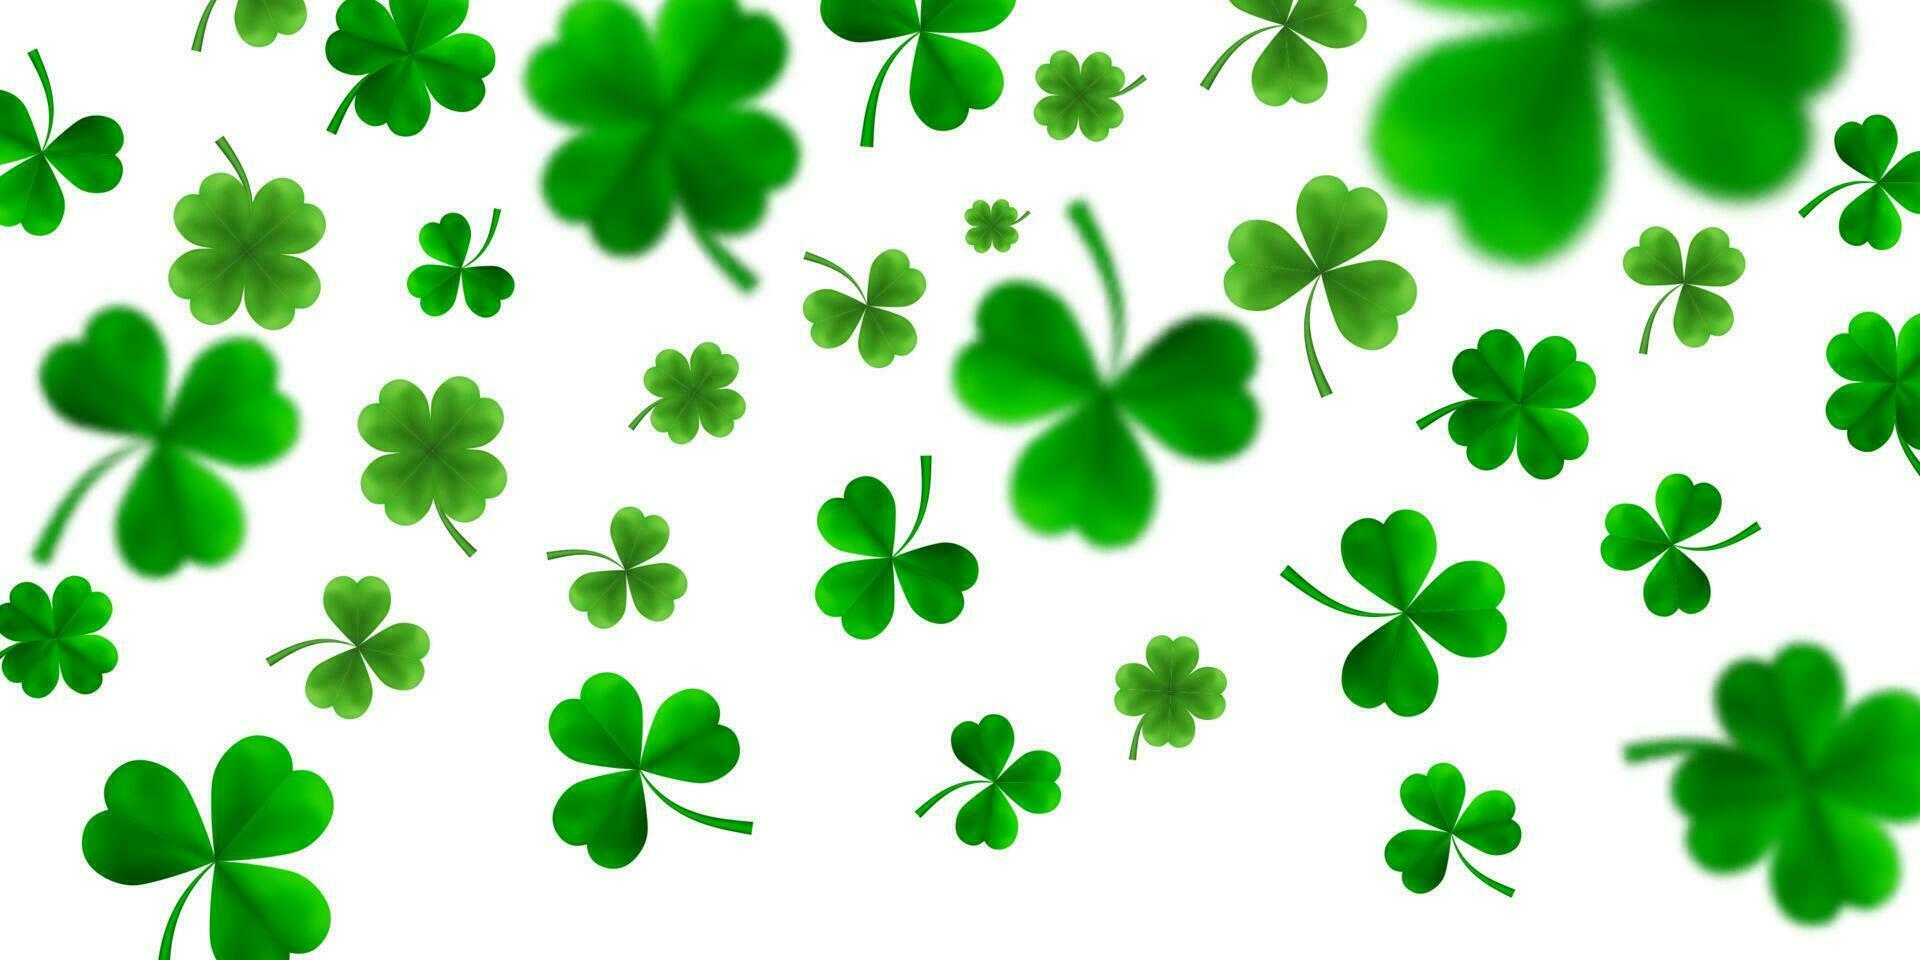 santo Patrick giorno confine con verde quattro e albero 3d foglia trifogli su bianca sfondo. irlandesi fortunato e successo simboli. vettore illustrazione